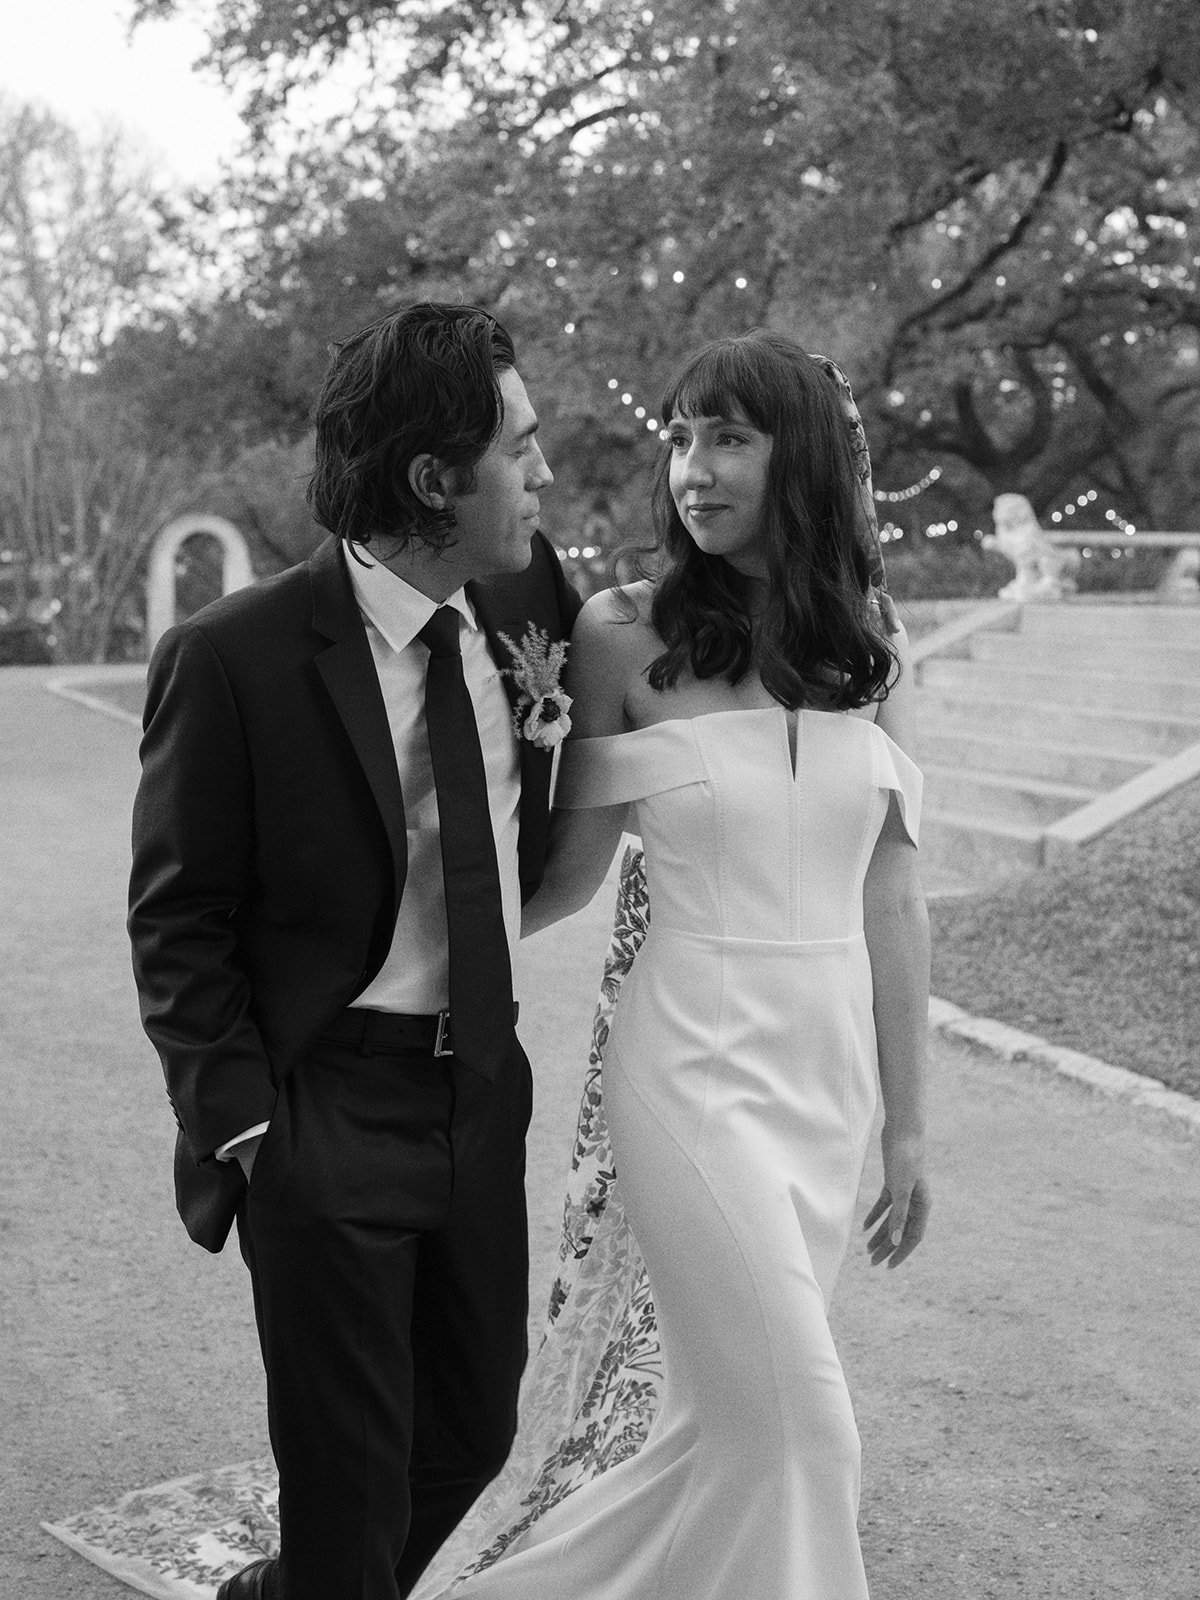 Best-Austin-Wedding-Photographers-Elopement-Film-35mm-Asheville-Santa-Barbara-Laguna-Gloria-67.jpg